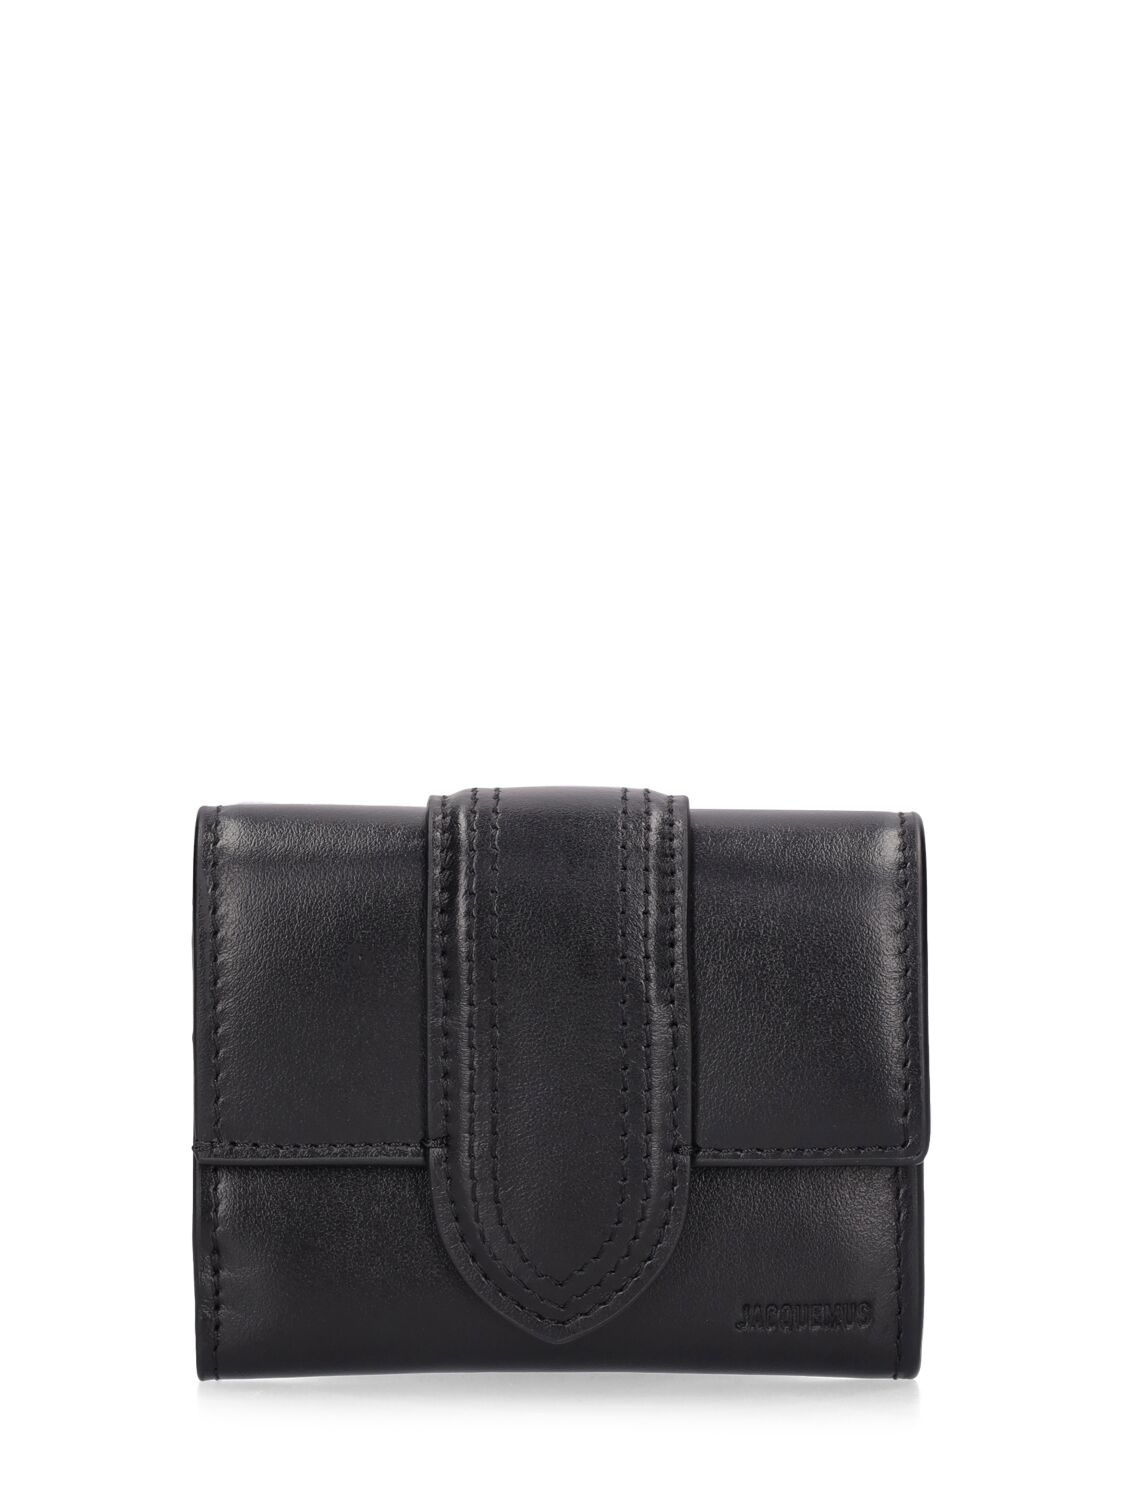 Le Compact Bambino Leather Wallet - JACQUEMUS - Modalova